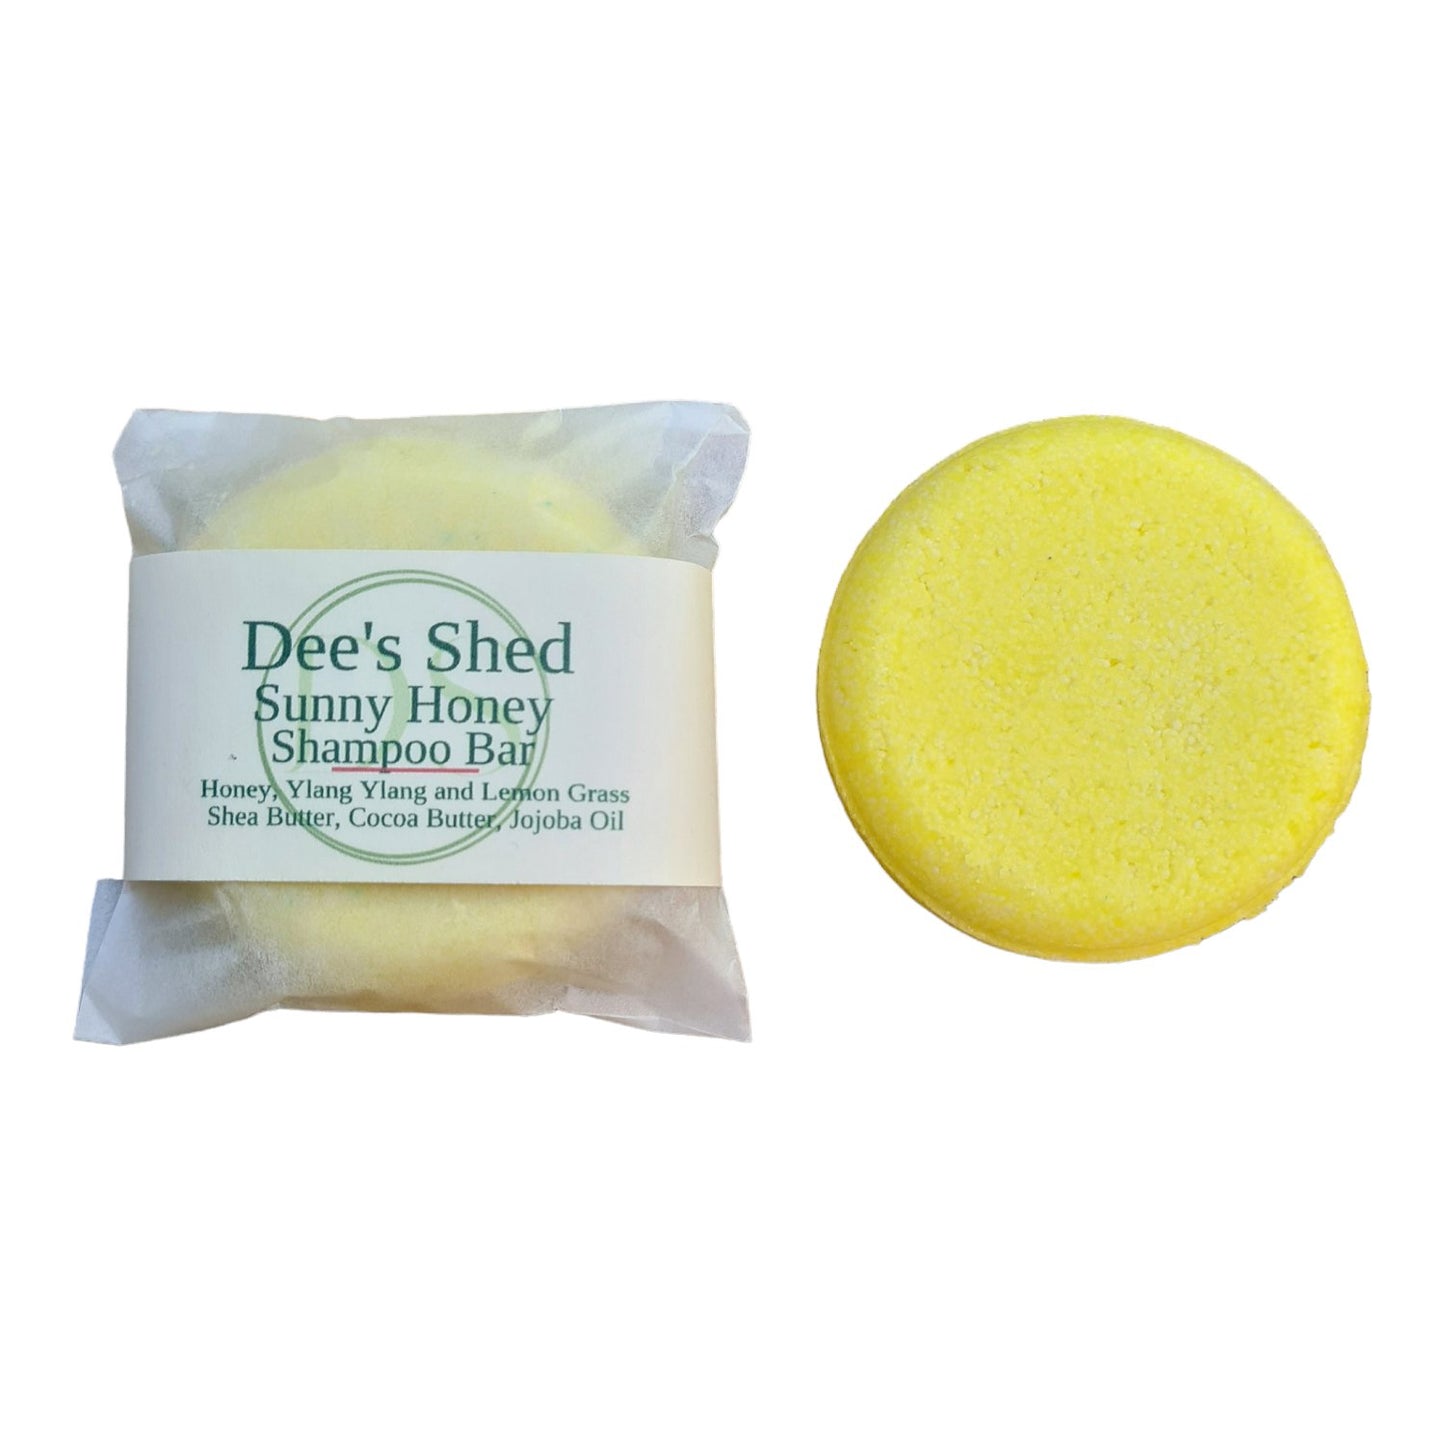 Shampoo Bars - Sunny Honey - Dees Shed